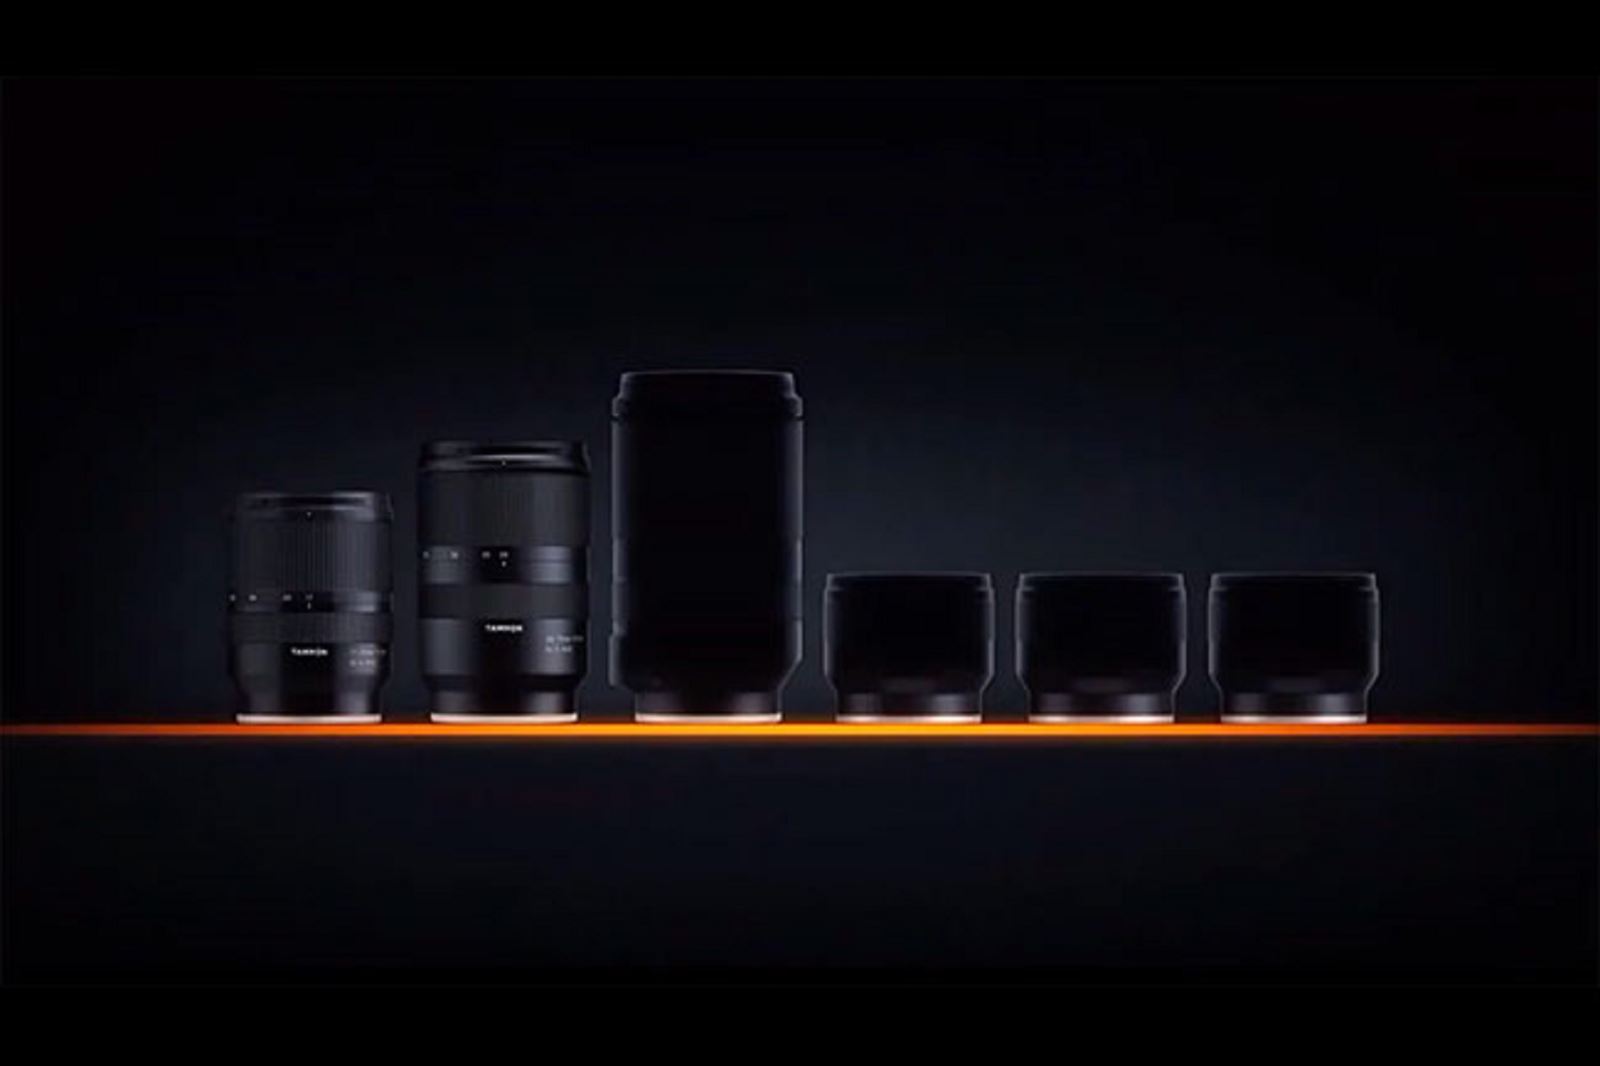 Tamron tung teaser hé lộ bốn ống kính mới dành cho máy ảnh Sony ngàm E